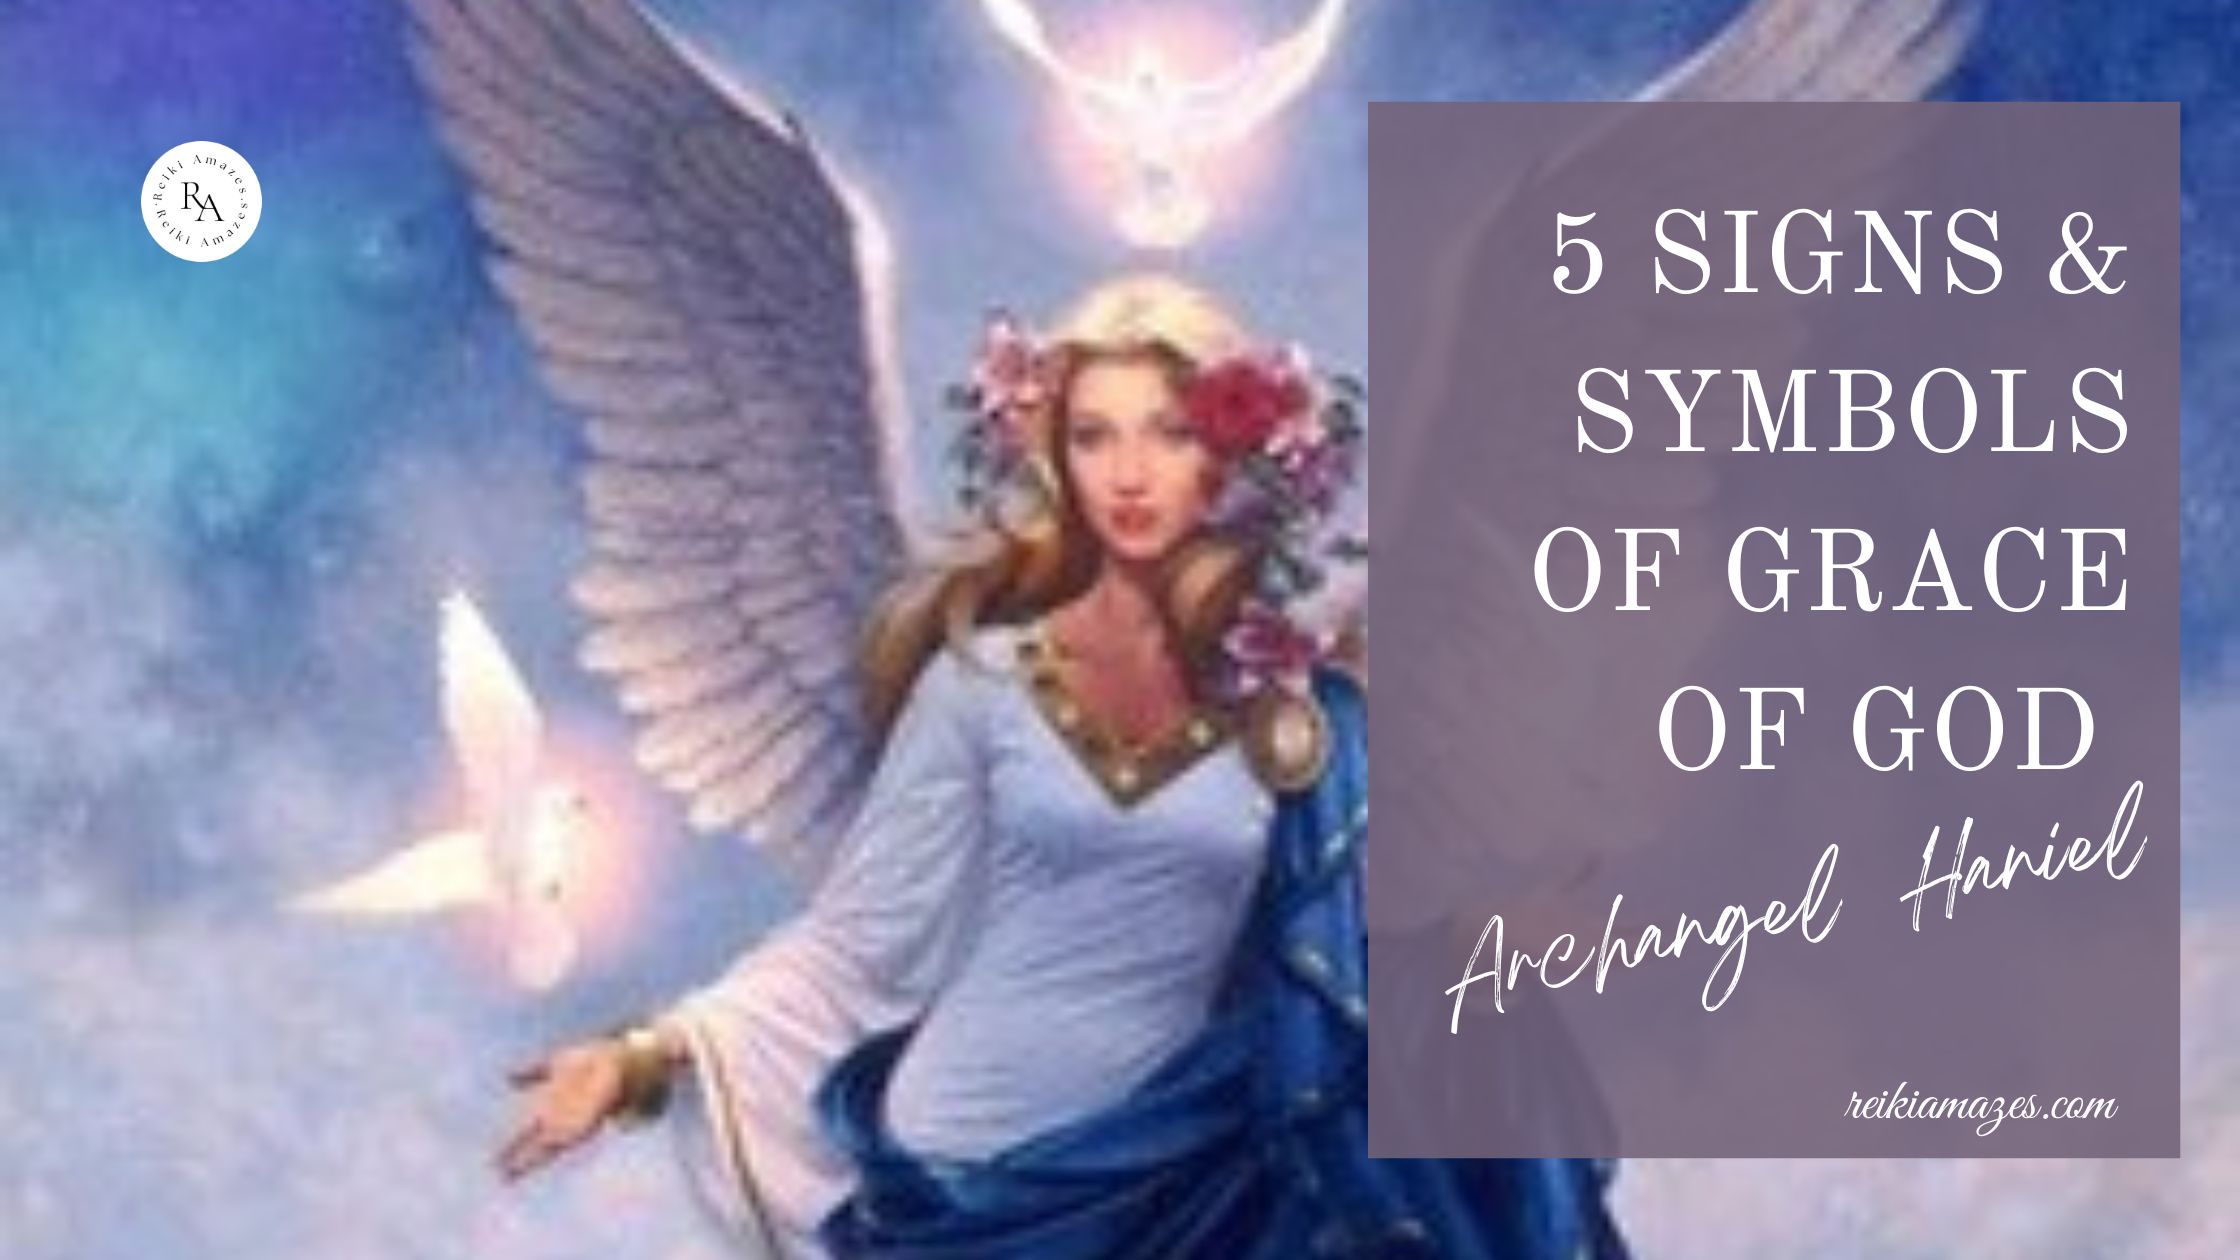 Blog Banner -5 Signs & Symbols of Grace of God, archangel haniel